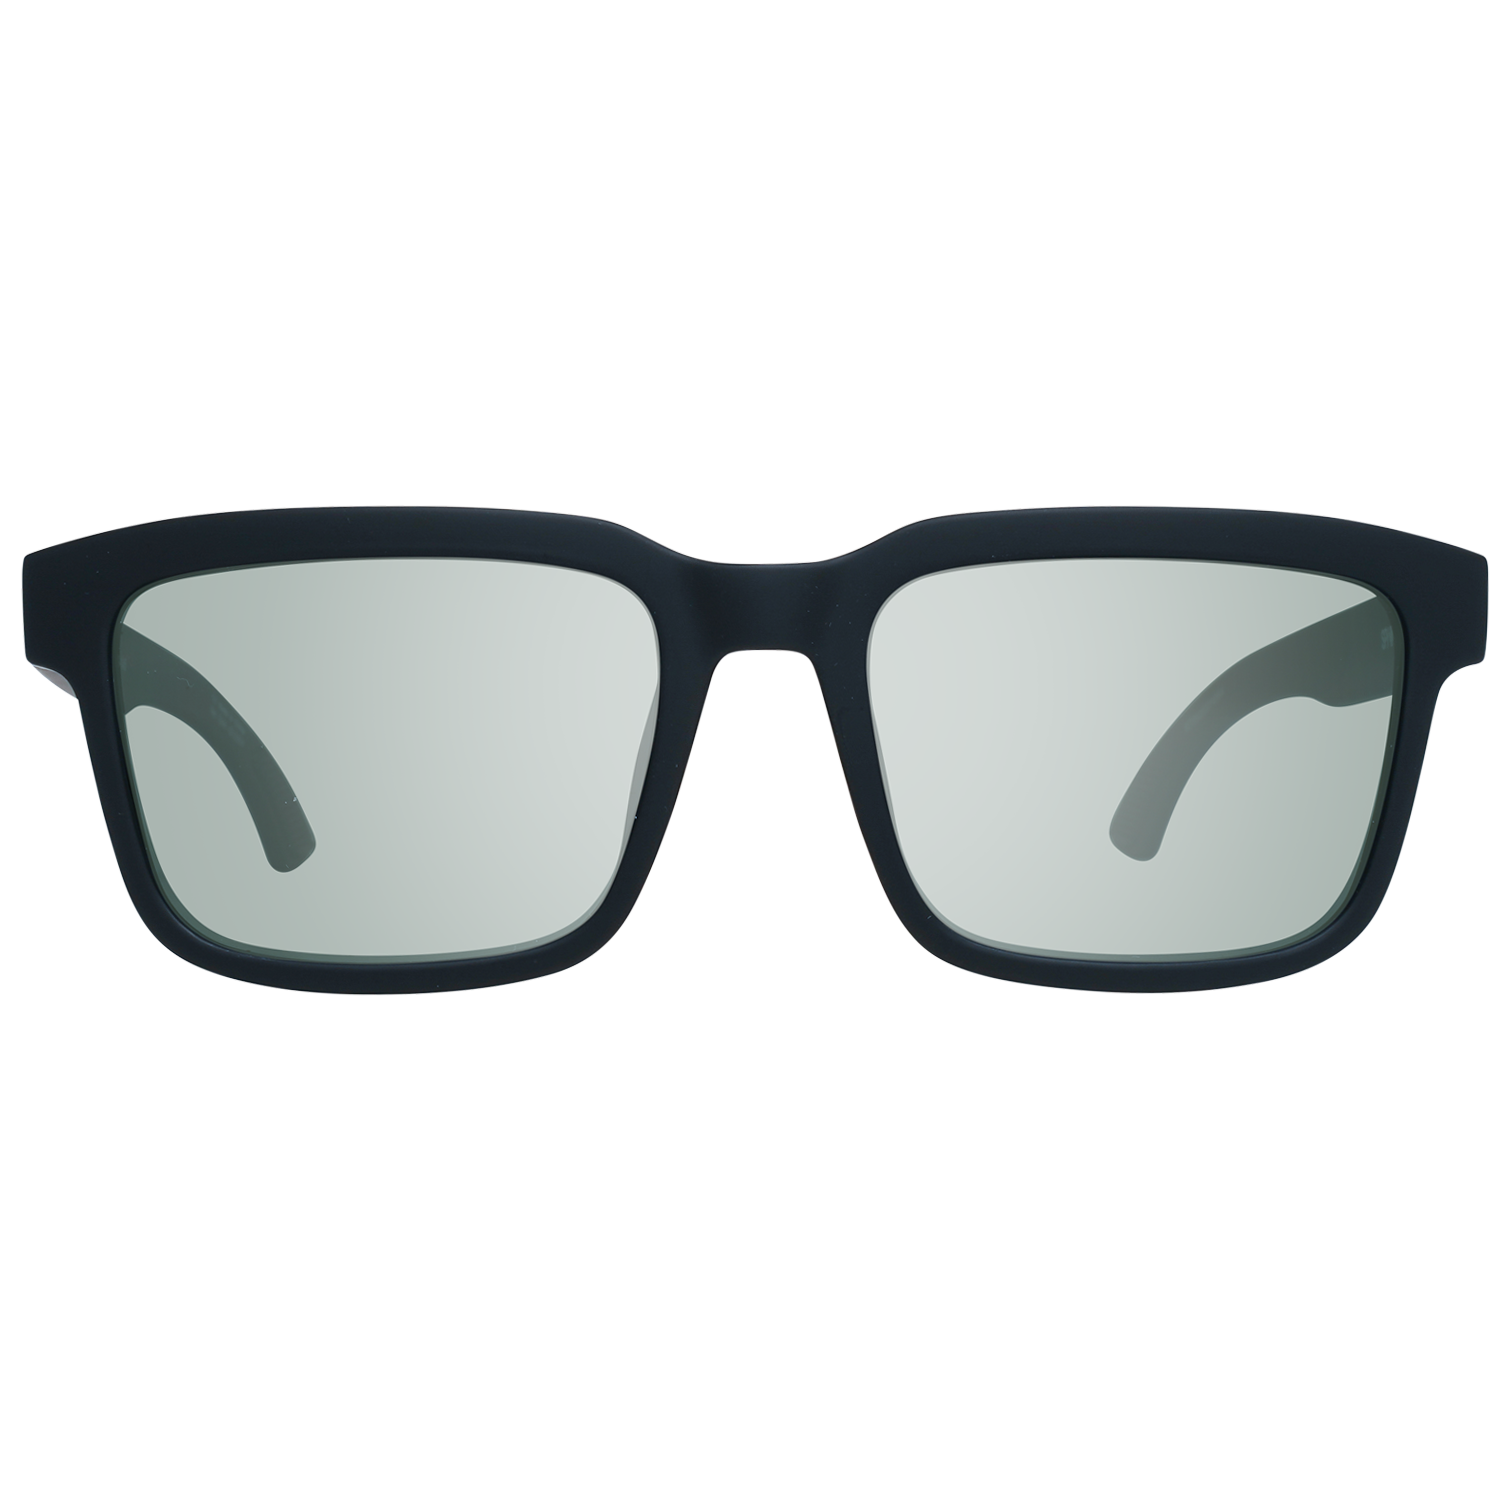 Spy Sunglasses Spy Sunglasses 673520374864 Helm 2 57 Eyeglasses Eyewear UK USA Australia 